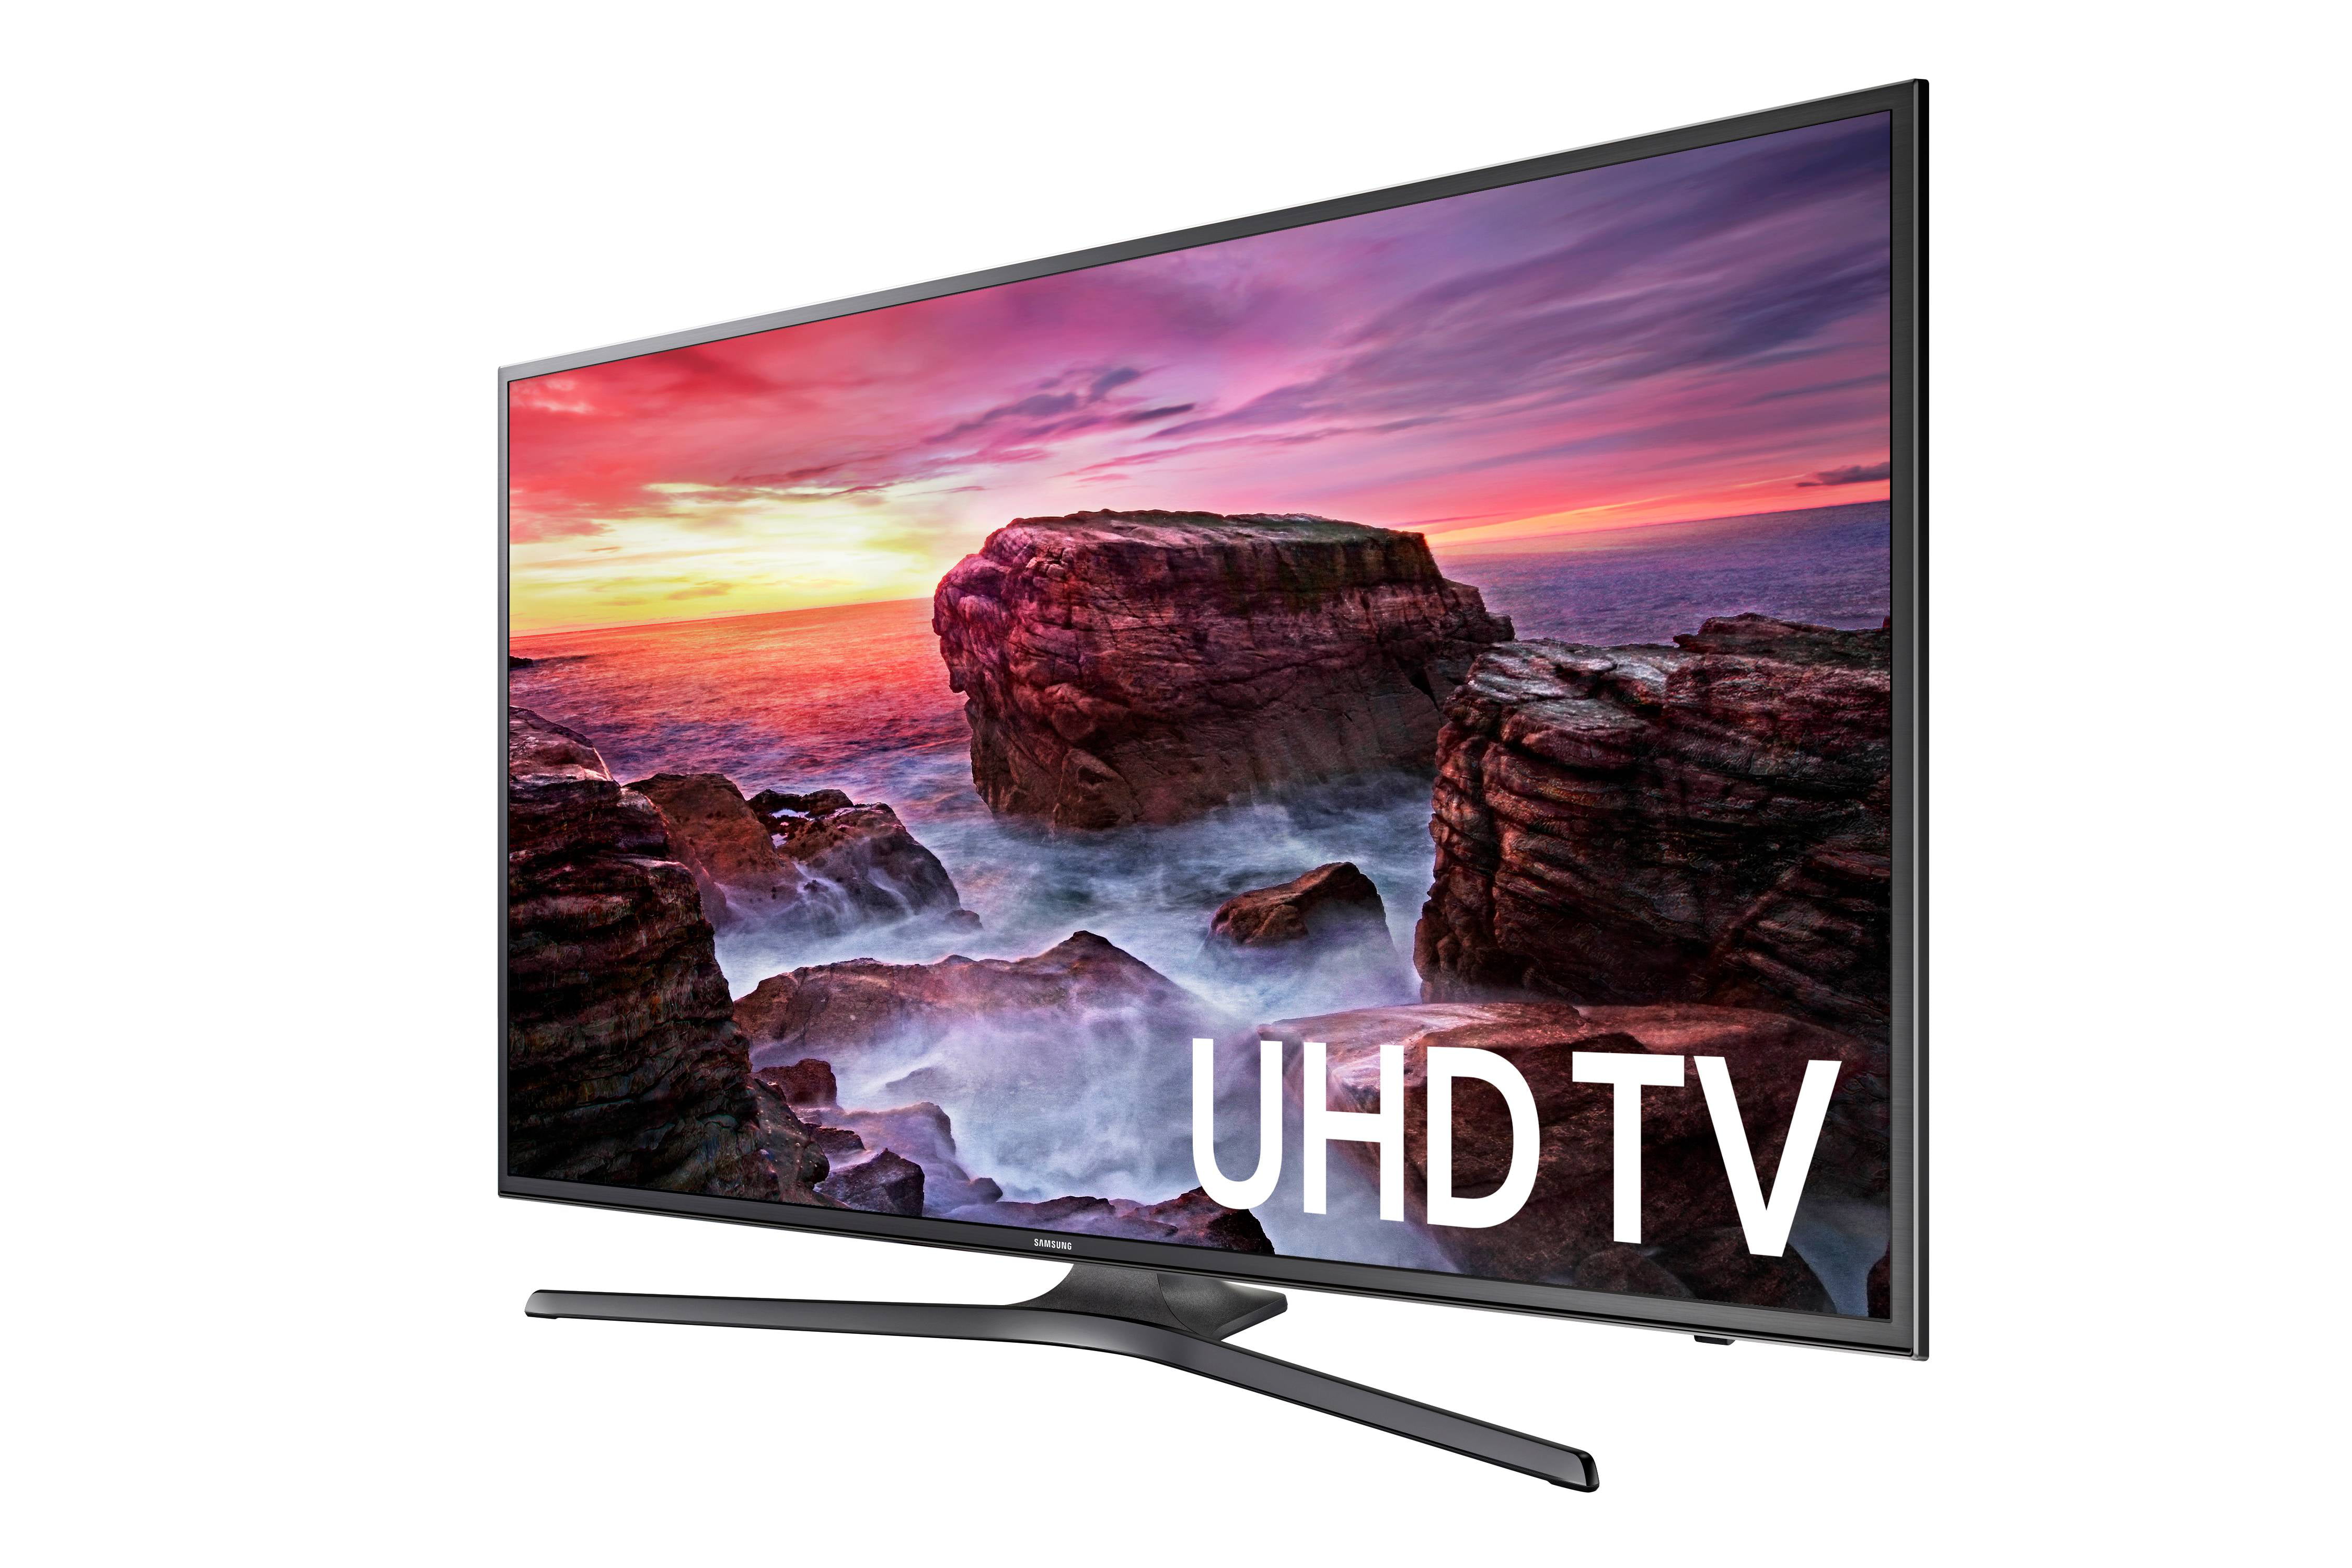 Serrated lovgivning Tag ud SAMSUNG 55" Class 4K (2160P) Ultra HD Smart LED TV (UN55MU6300FXZA) -  Walmart.com